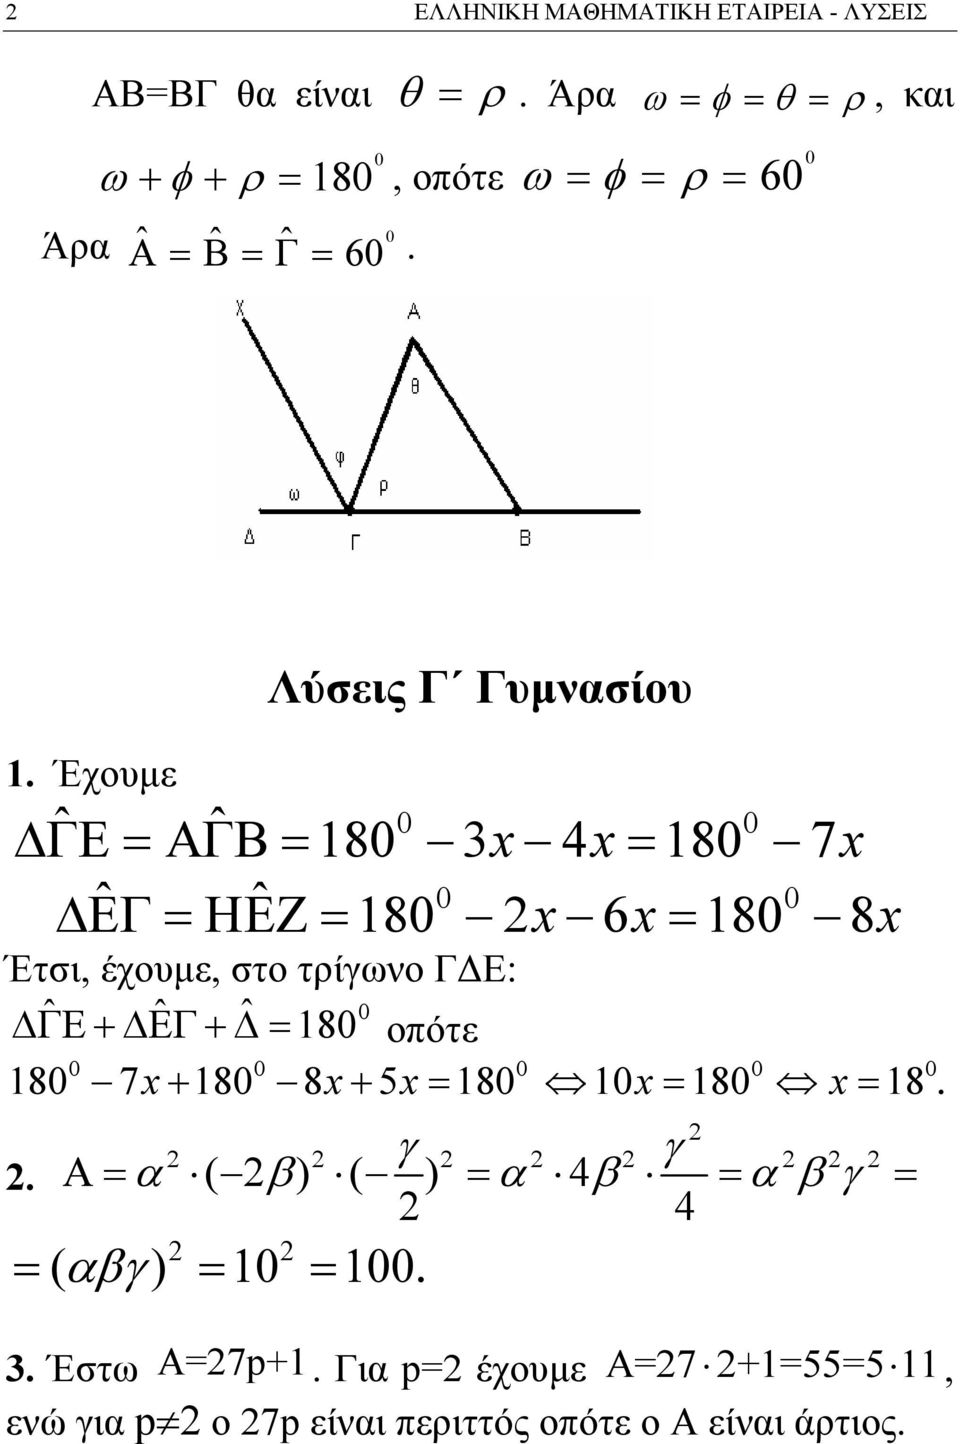 Έχουμε Λύσεις Γ Γυμνασίου ˆ ˆ 0 0 80 4 80 7 ΔΓΕ = ΑΓΒ = x x= x ˆ ˆ 0 0 ΔΕΓ = ΗΕΖ = 80 x 6x= 80 8x Έτσι, έχουμε, στο τρίγωνο